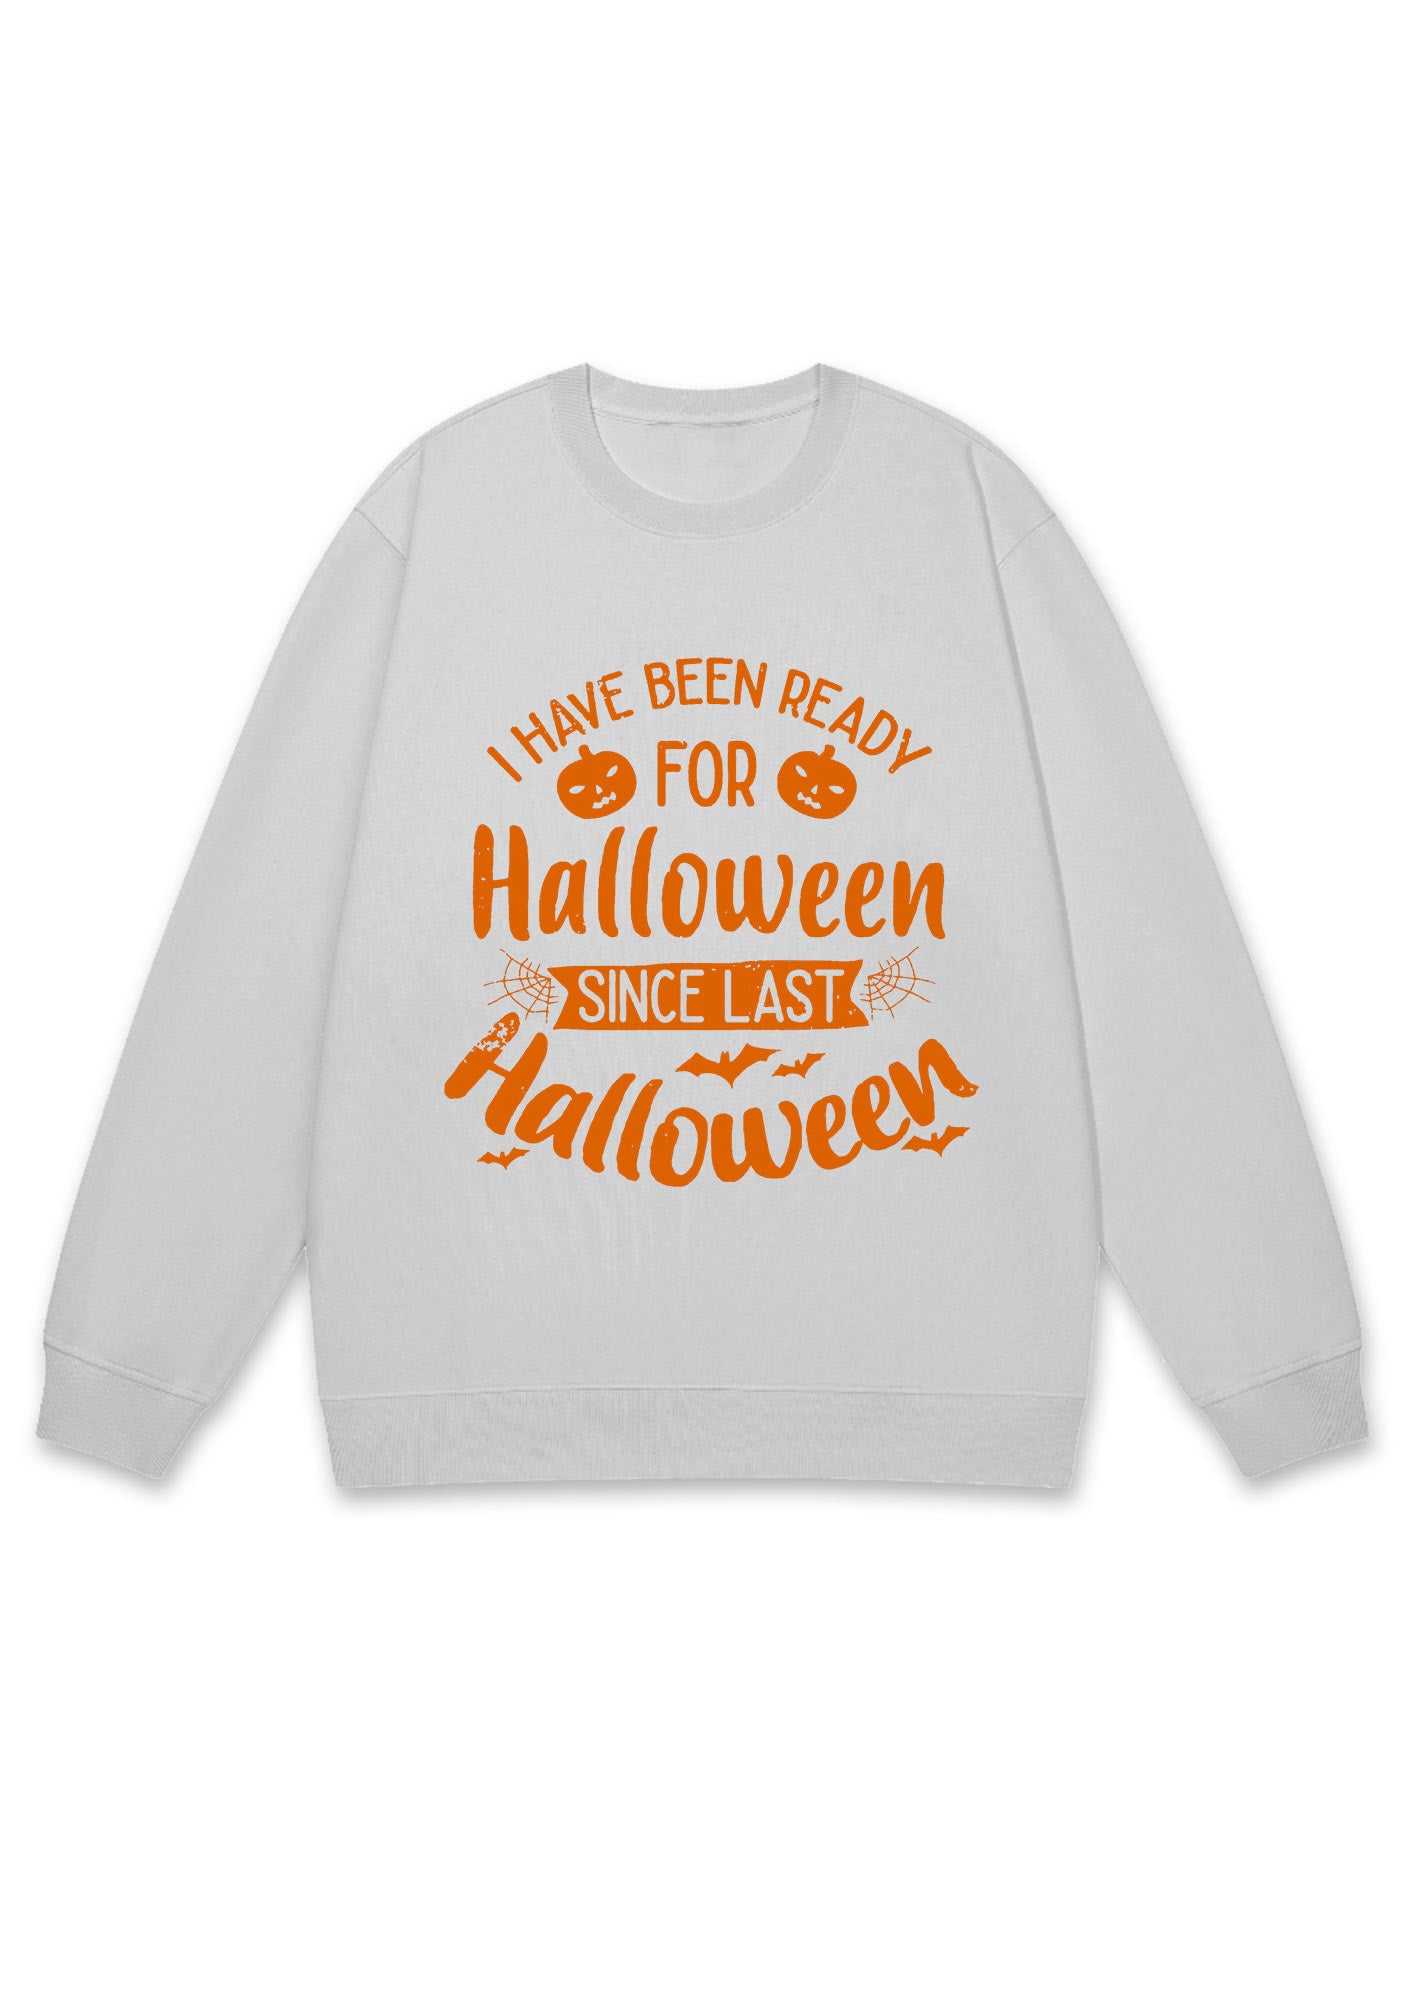 I Have Been Ready For Halloween Y2K Sweatshirt Cherrykitten